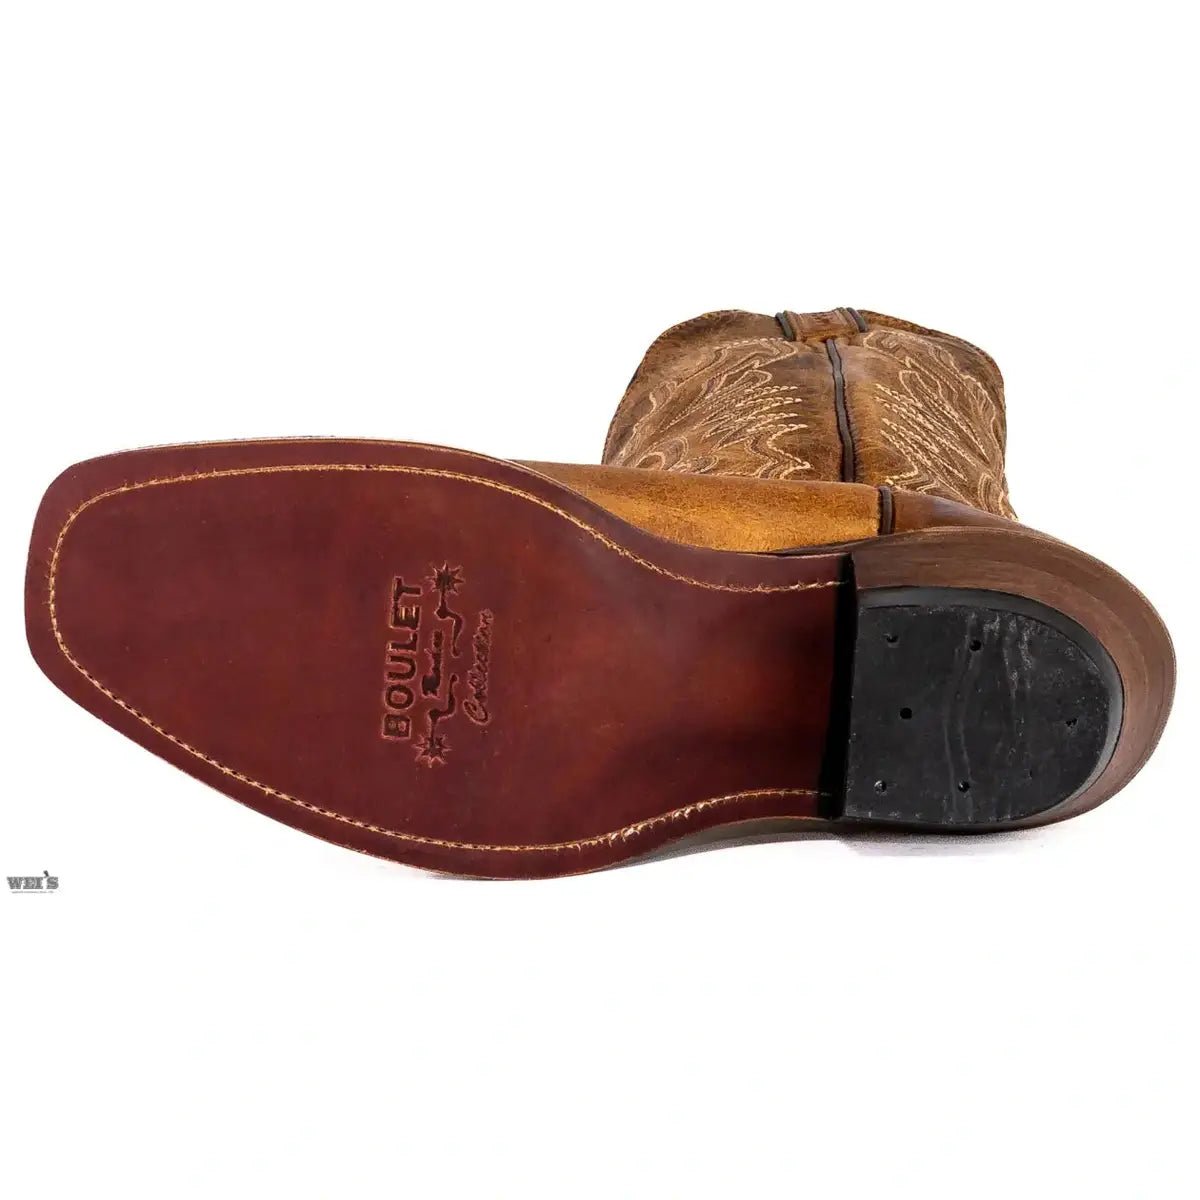 Boulet Men's Cowboy Boots Cowhide 7201 - Boulet